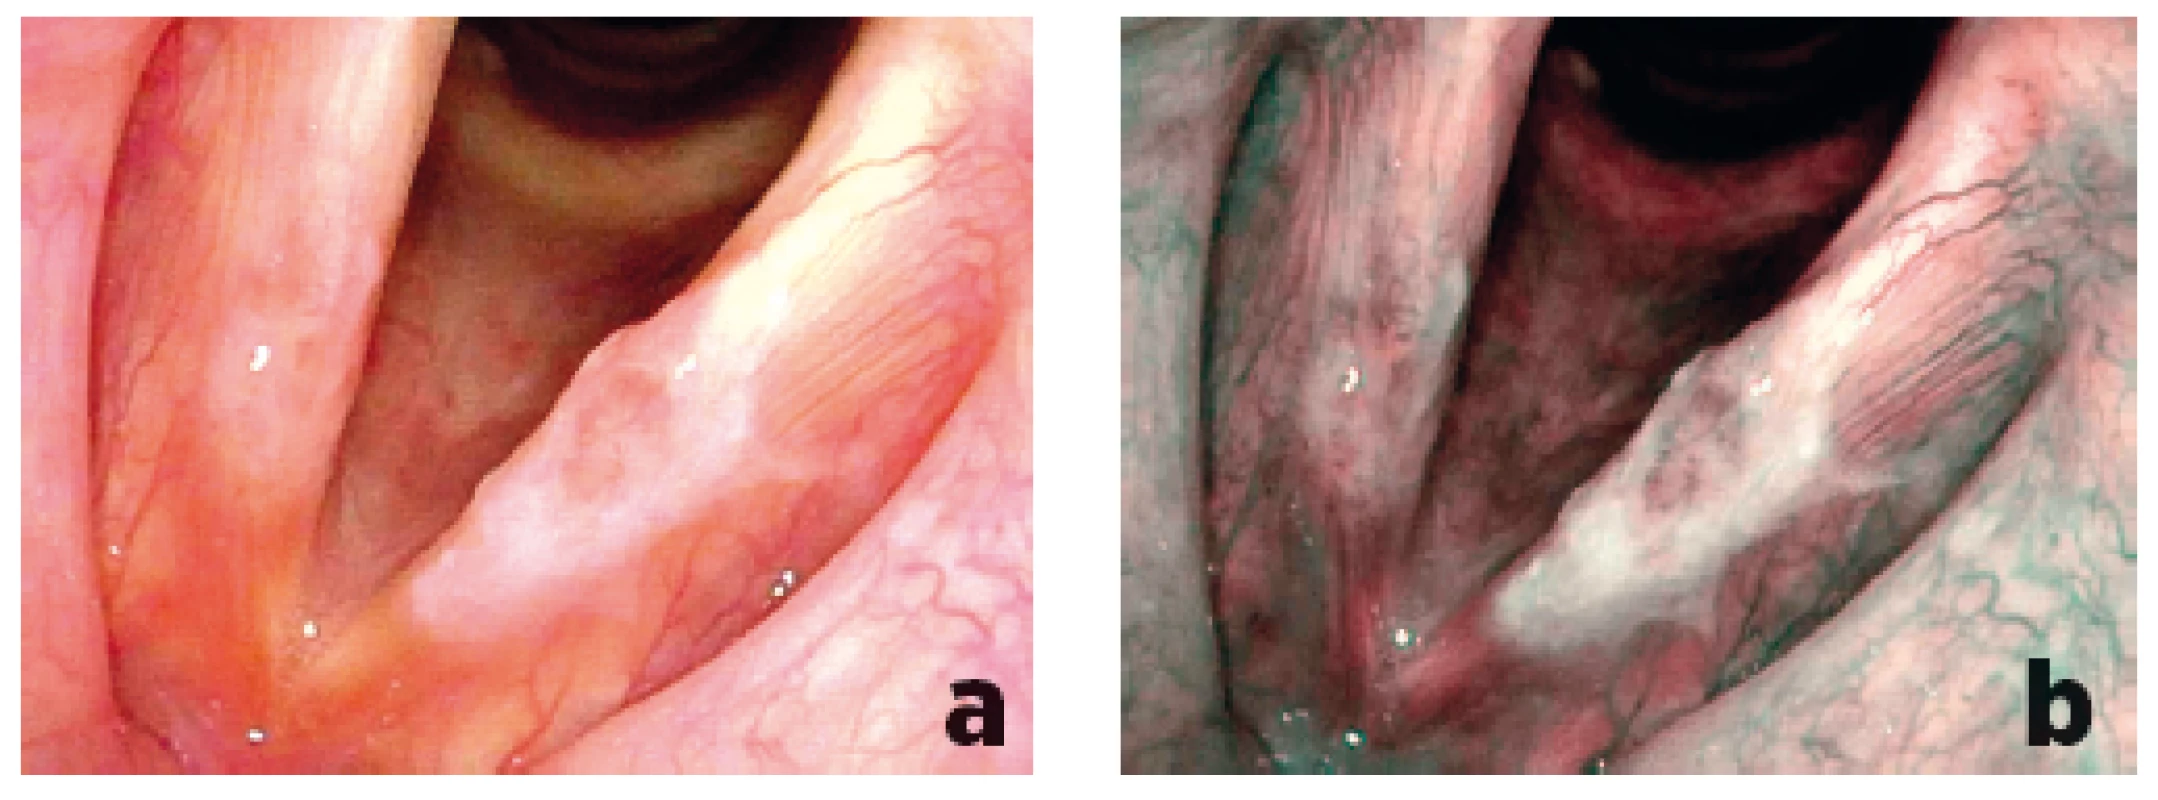 Porovnání zobrazení plošné leukoplakické léze levé hlasivky při flexibilní endoskopii bílým světlem (a) a při NBI endoskopii (b) – v NBI endoskopii viditelný větší plošný rozsah léze, patologická vaskularizace Typ Va zjištěna nejen na levé, ale také na pravé hlasivce, histologicky prokázán carcinoma in situ na obou hlasivkách.